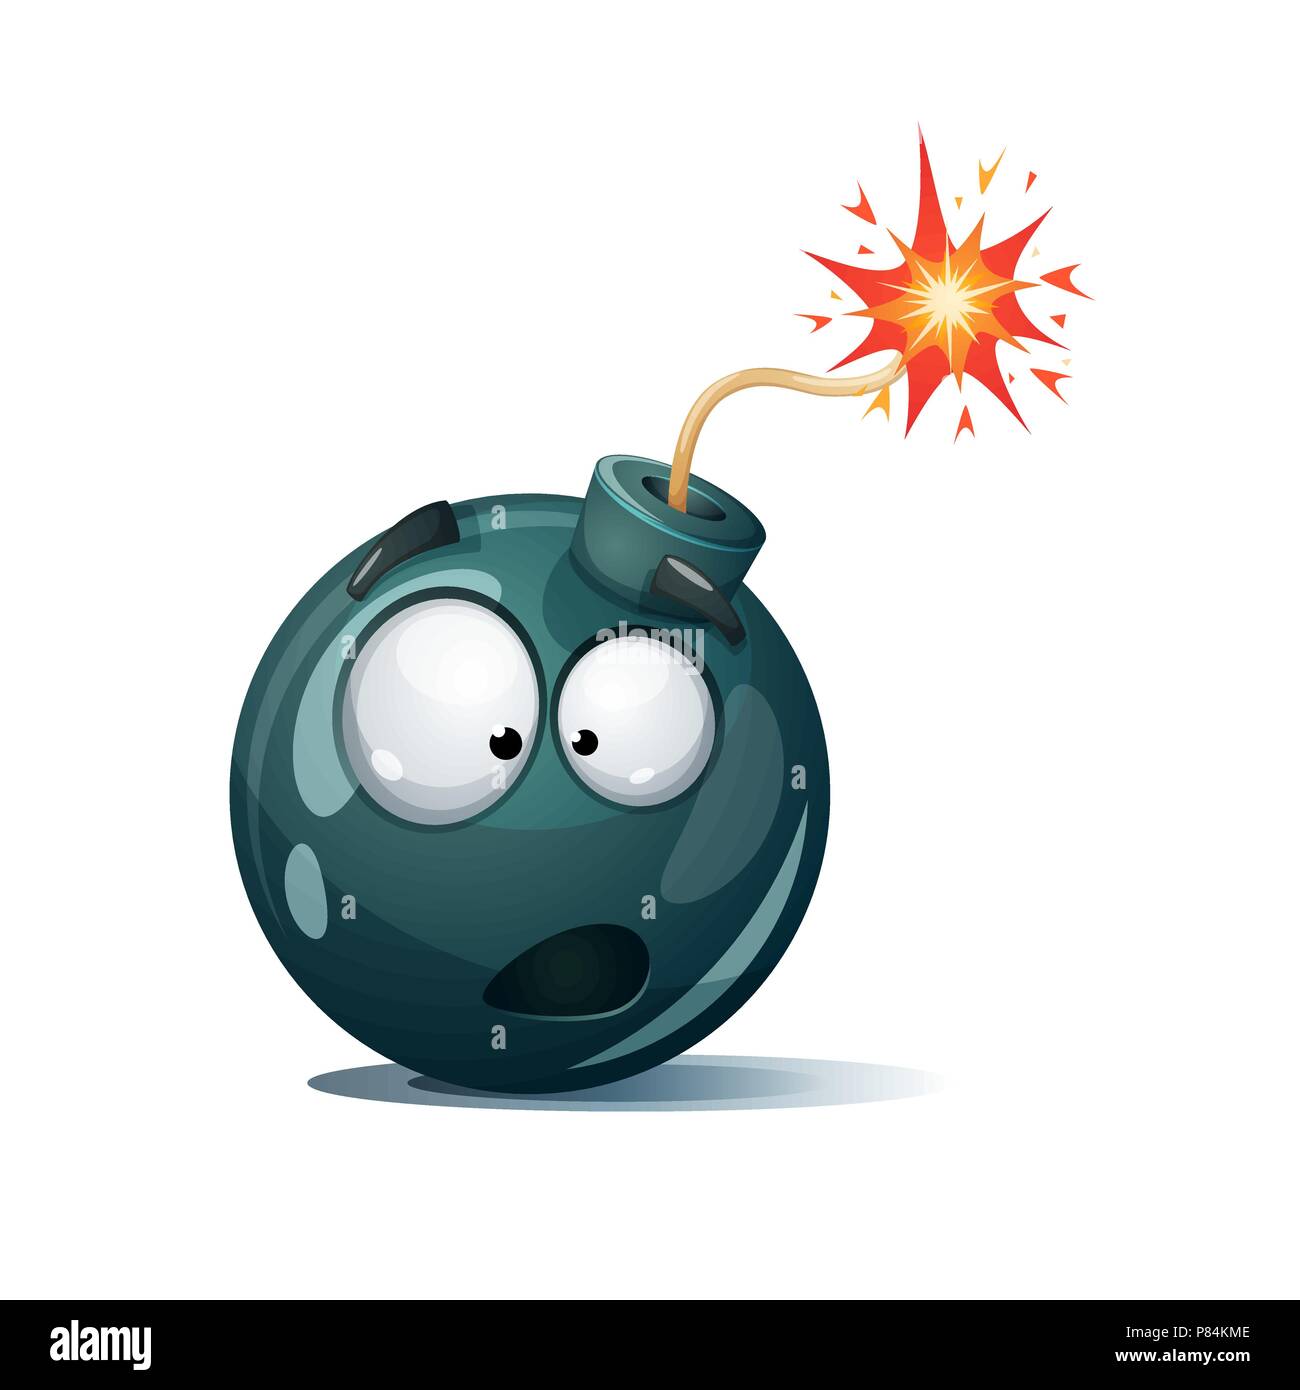 Cute, funny, crazy - cartoon bomb character. Stock Vector